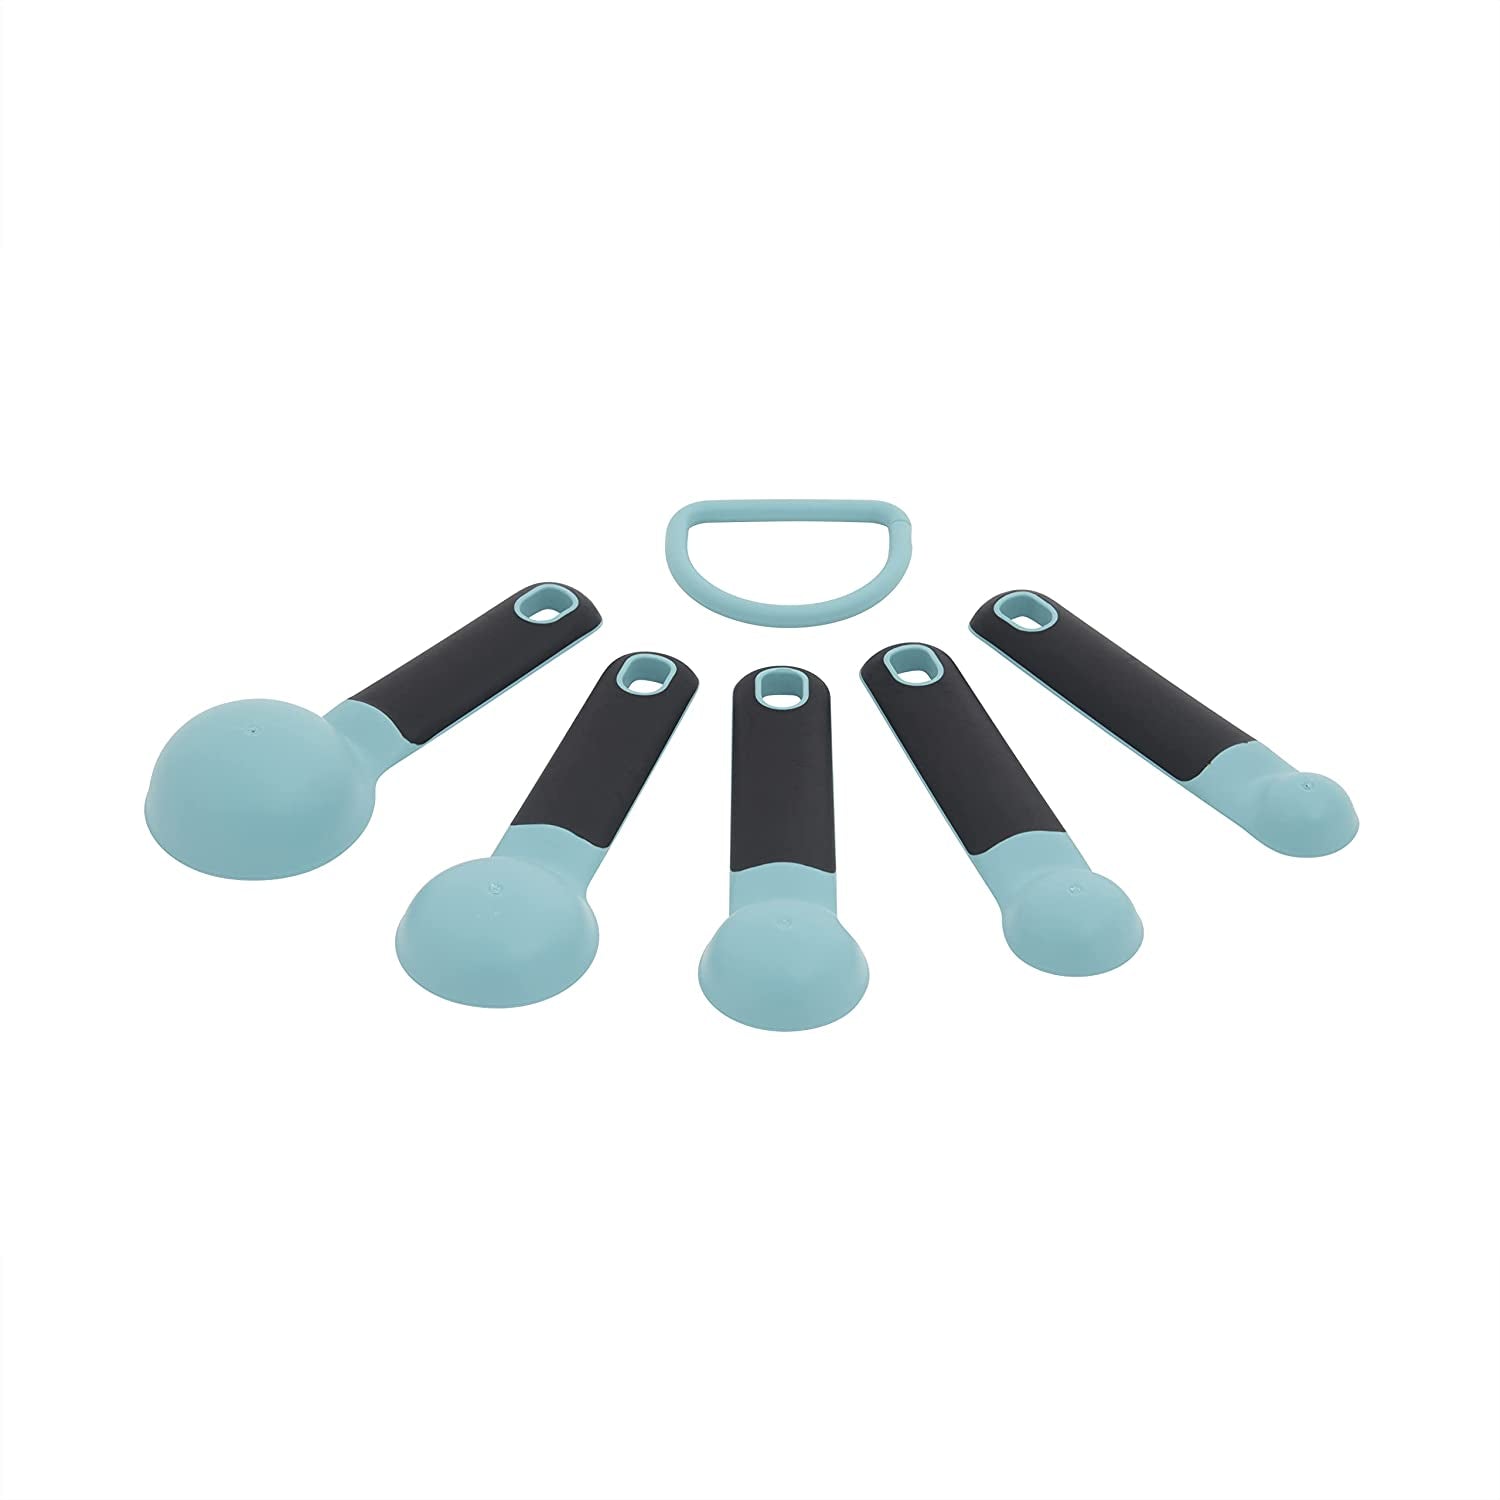 KitchenAid Aqua Sky Measuring Spoons Set of 5, Aqua Sky